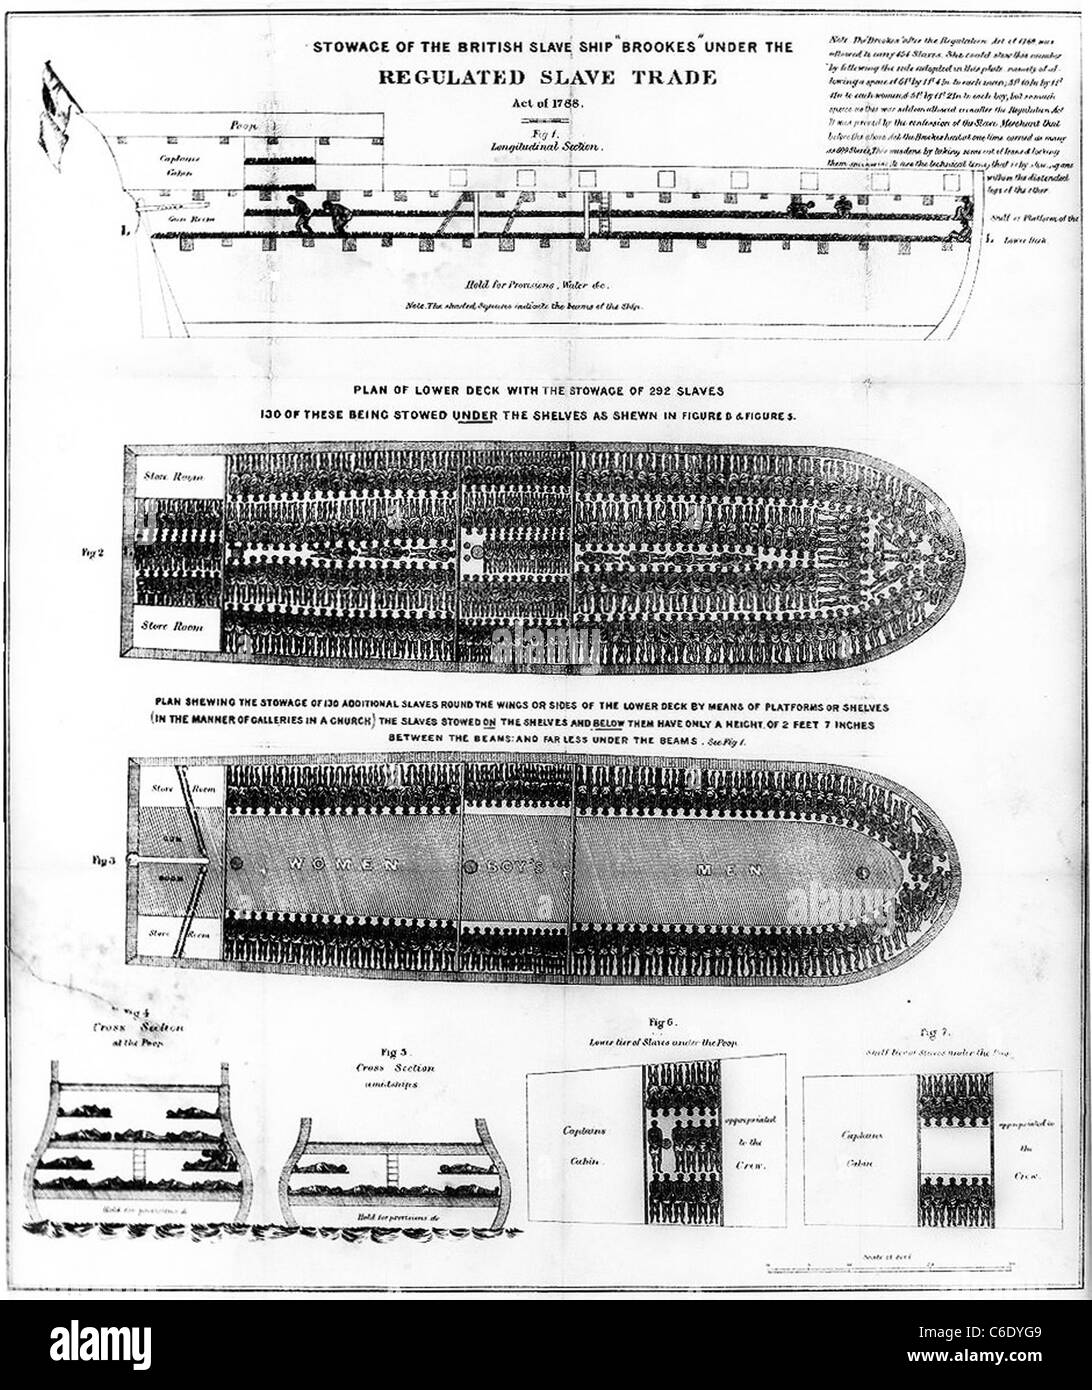 Sklaverei-Diagramm des englischen Sklaven Schiff "Brookes" unter dem regulierten Slave Trade Act von 1788 Stockfoto